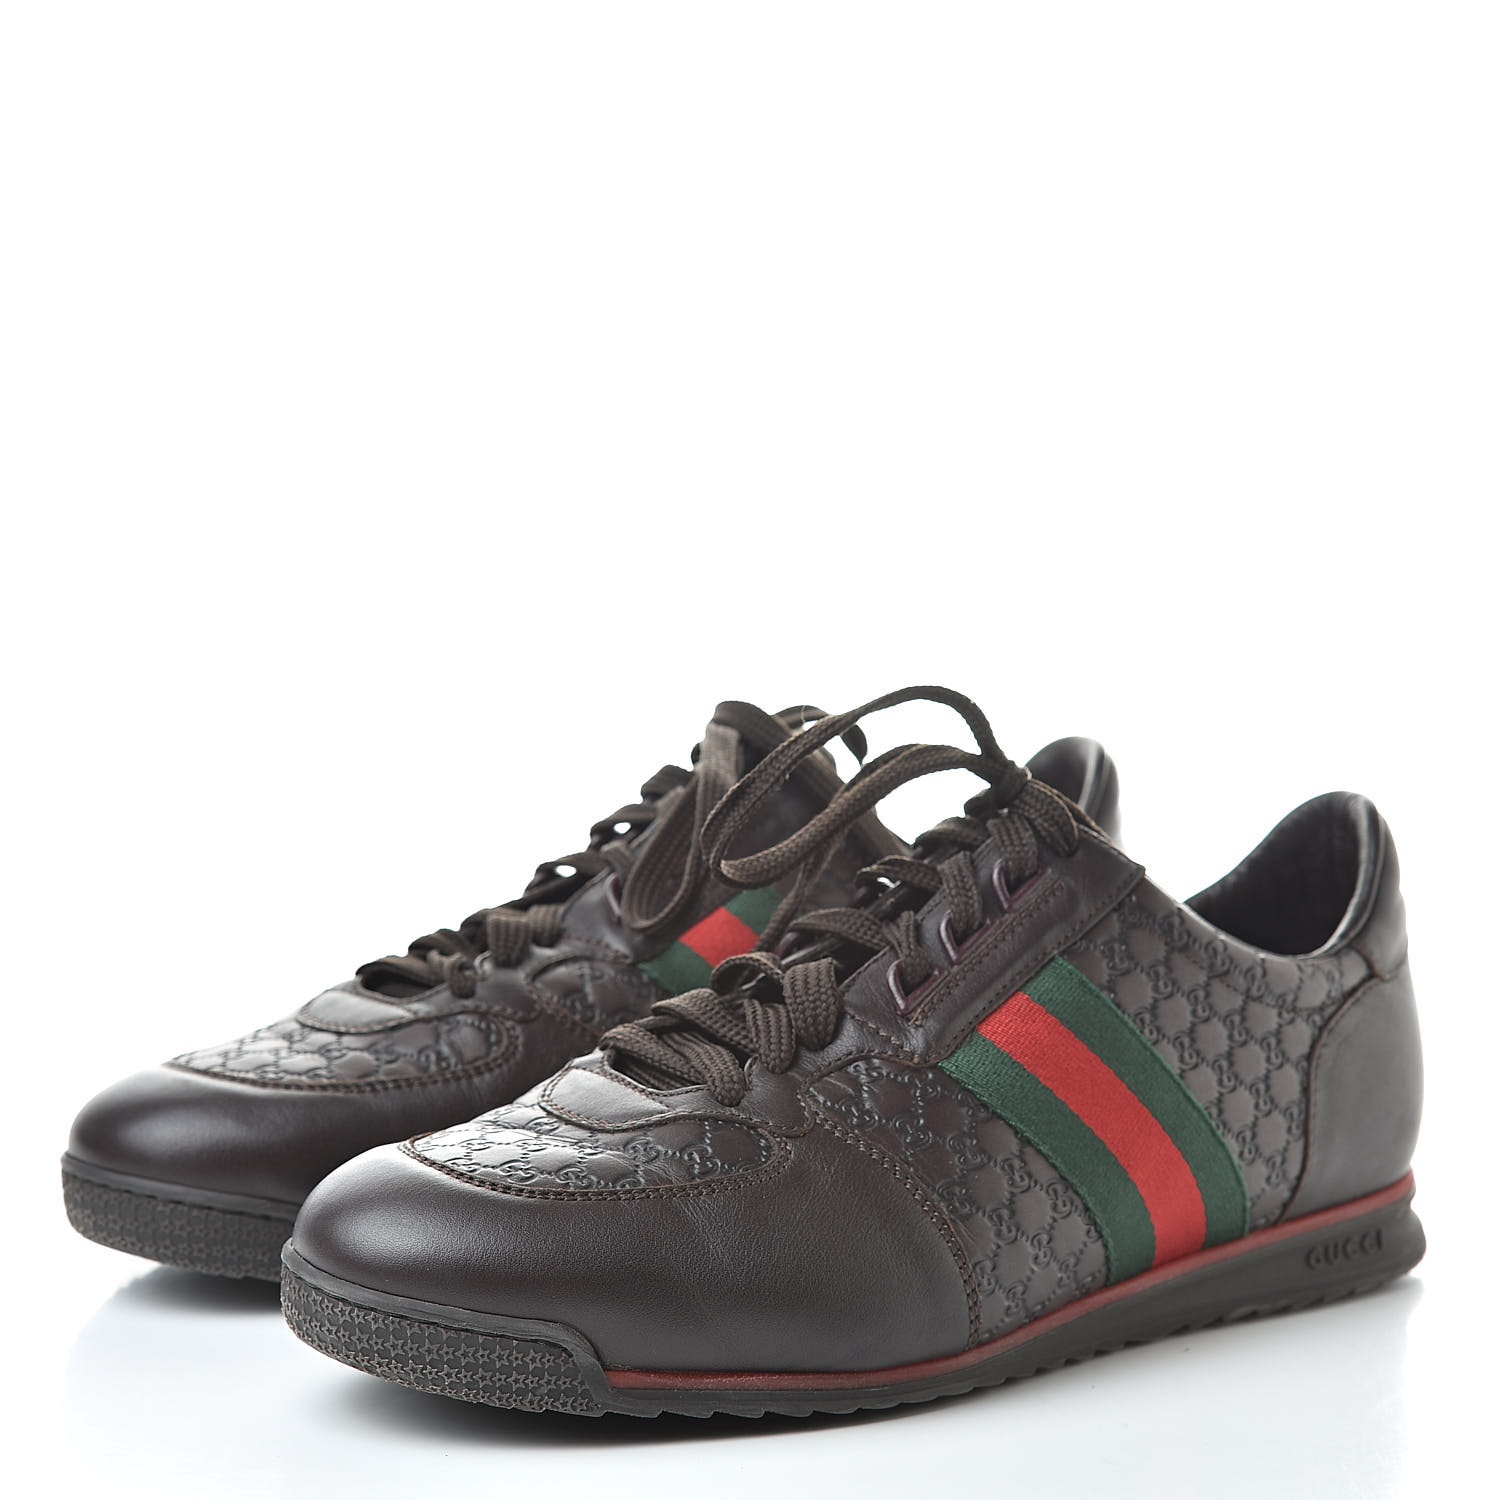 GUCCI Guccissima Web Mens Sneakers 8.5 Brown 516976